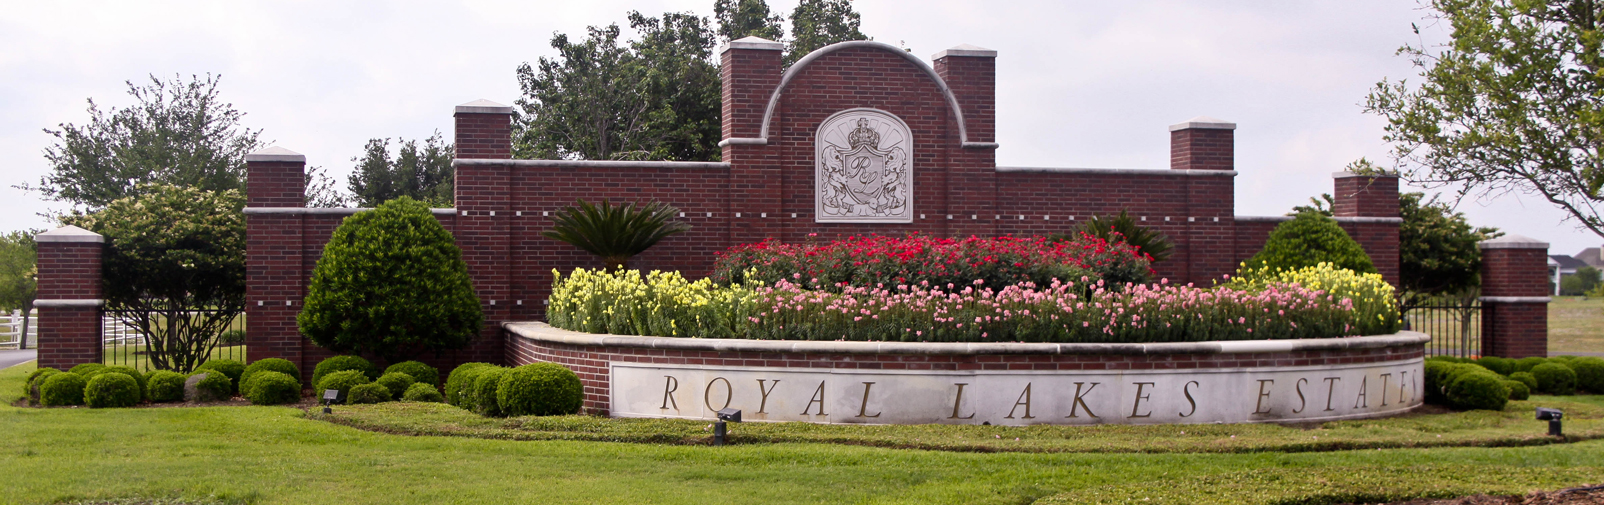 Royal Lakes Estates